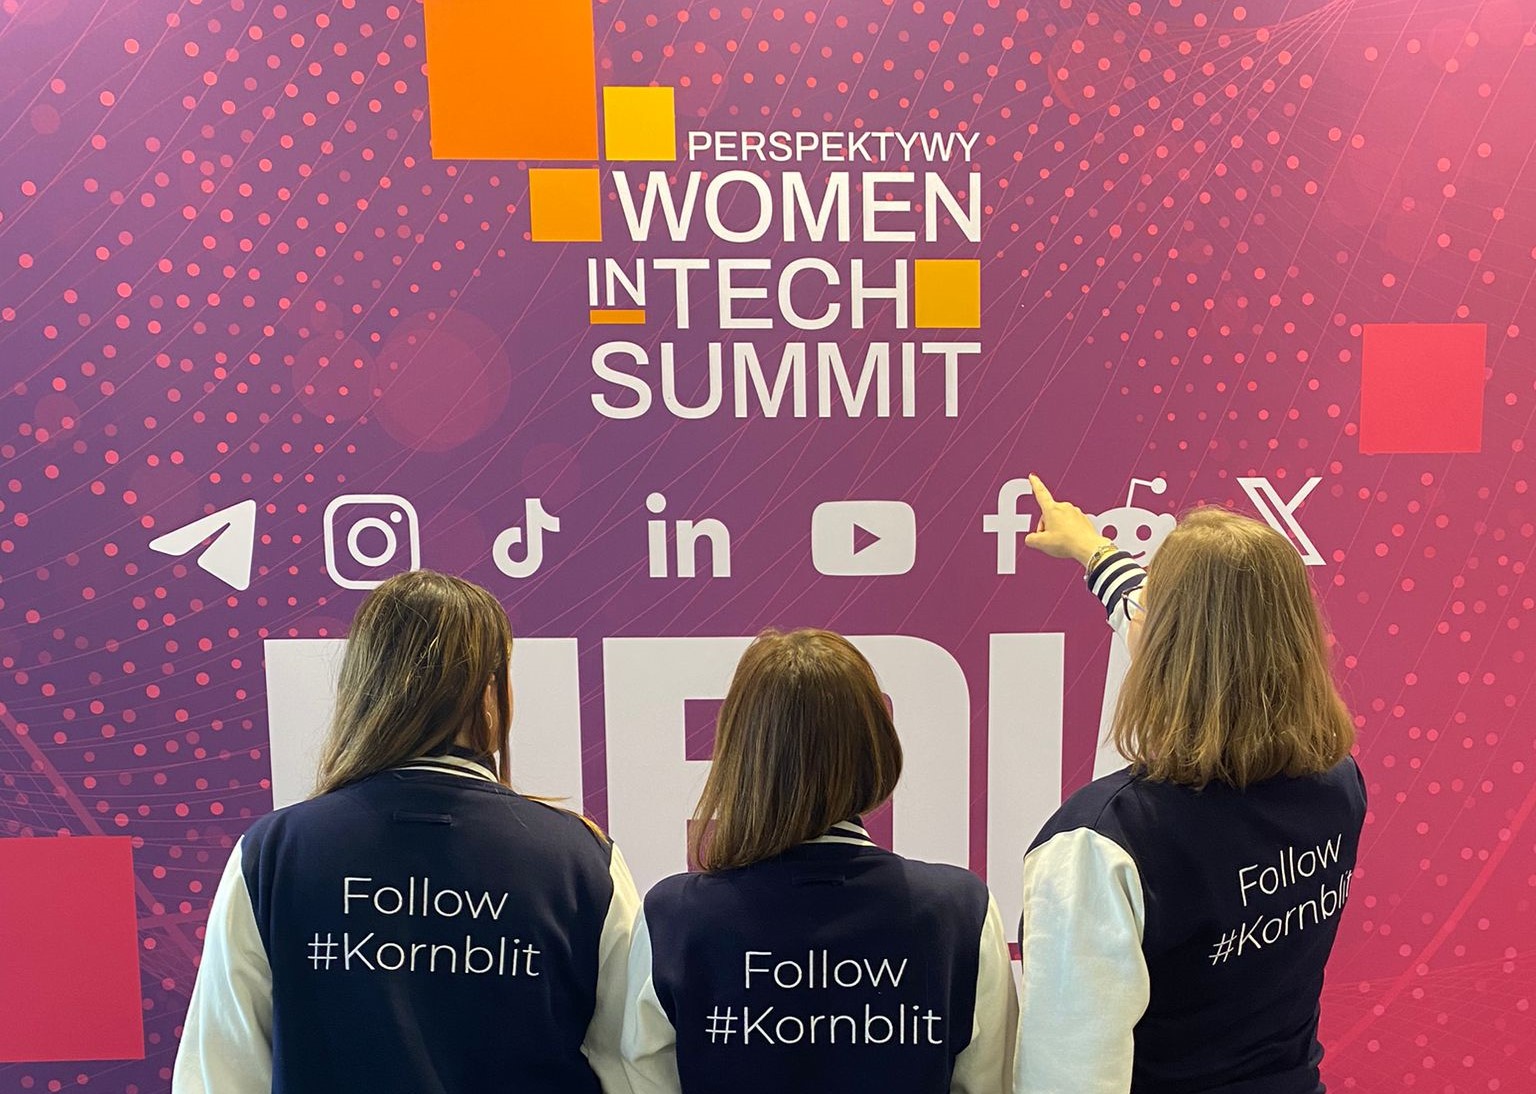 Women in Tech Summit Perspektywy Kornblit & Partners